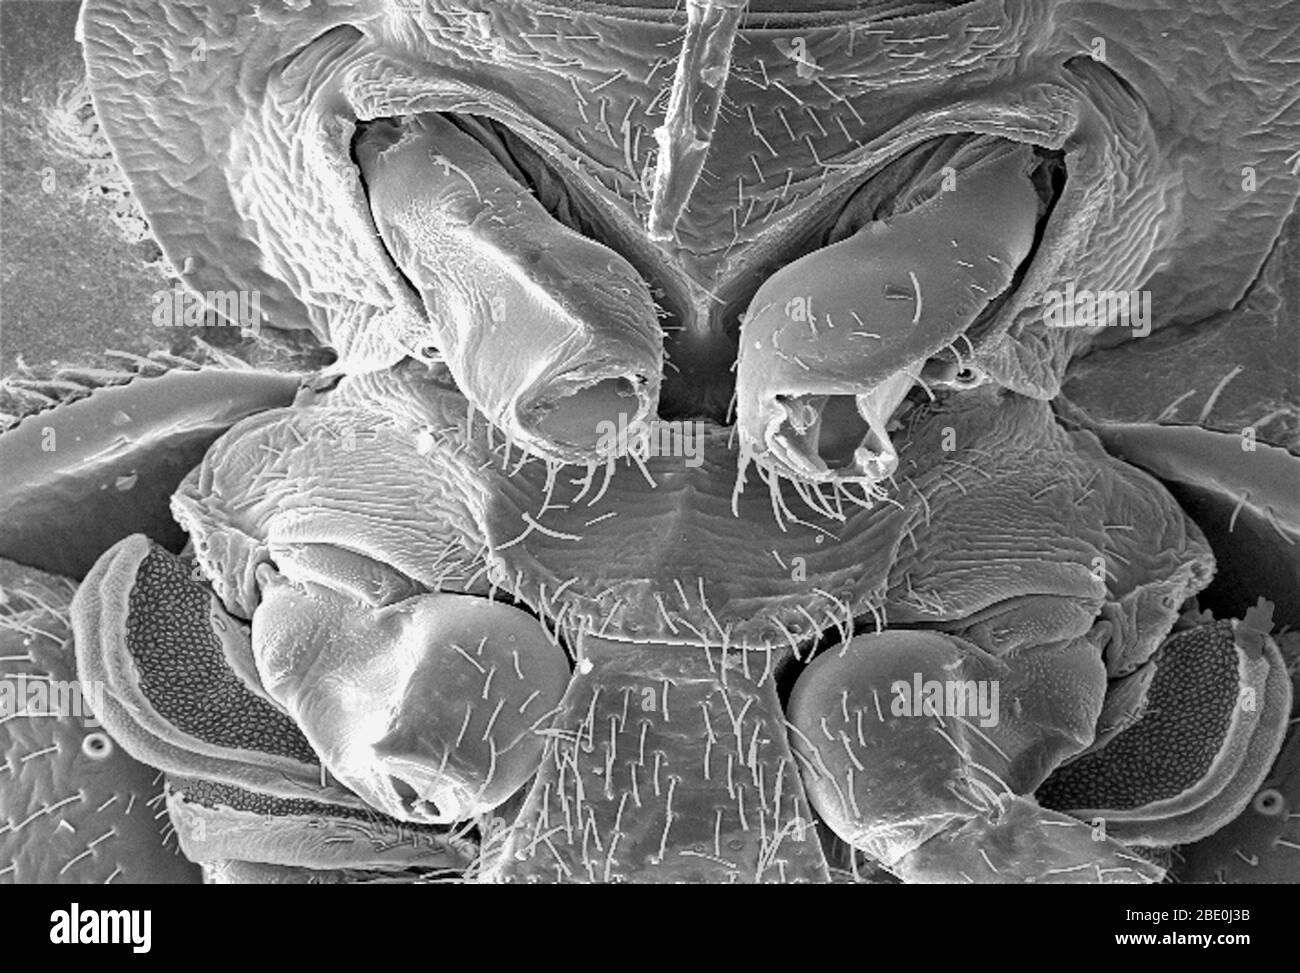 Le micrographe électronique à balayage (SEM) a révélé une partie de la morphologie ultrastructurale affichée sur la surface ventrale d'un coccinelle, Cmex lectularius. De cette vue, en haut, vous pouvez voir les pièces buccales piercing de peau de l'insecte qu'il utilise pour obtenir son repas sanguin, ainsi qu'un certain nombre de ses six jambes non articulées. Vous remarquerez également une belle structure diaphane au bas de l'image. On spéculent que cet organe ultrastructural merveilleux est probablement une glande senteur, ou liée à la diffusion de parfum, qui peut être de nature phéromonale. Une autre dissection de ceci, et Banque D'Images